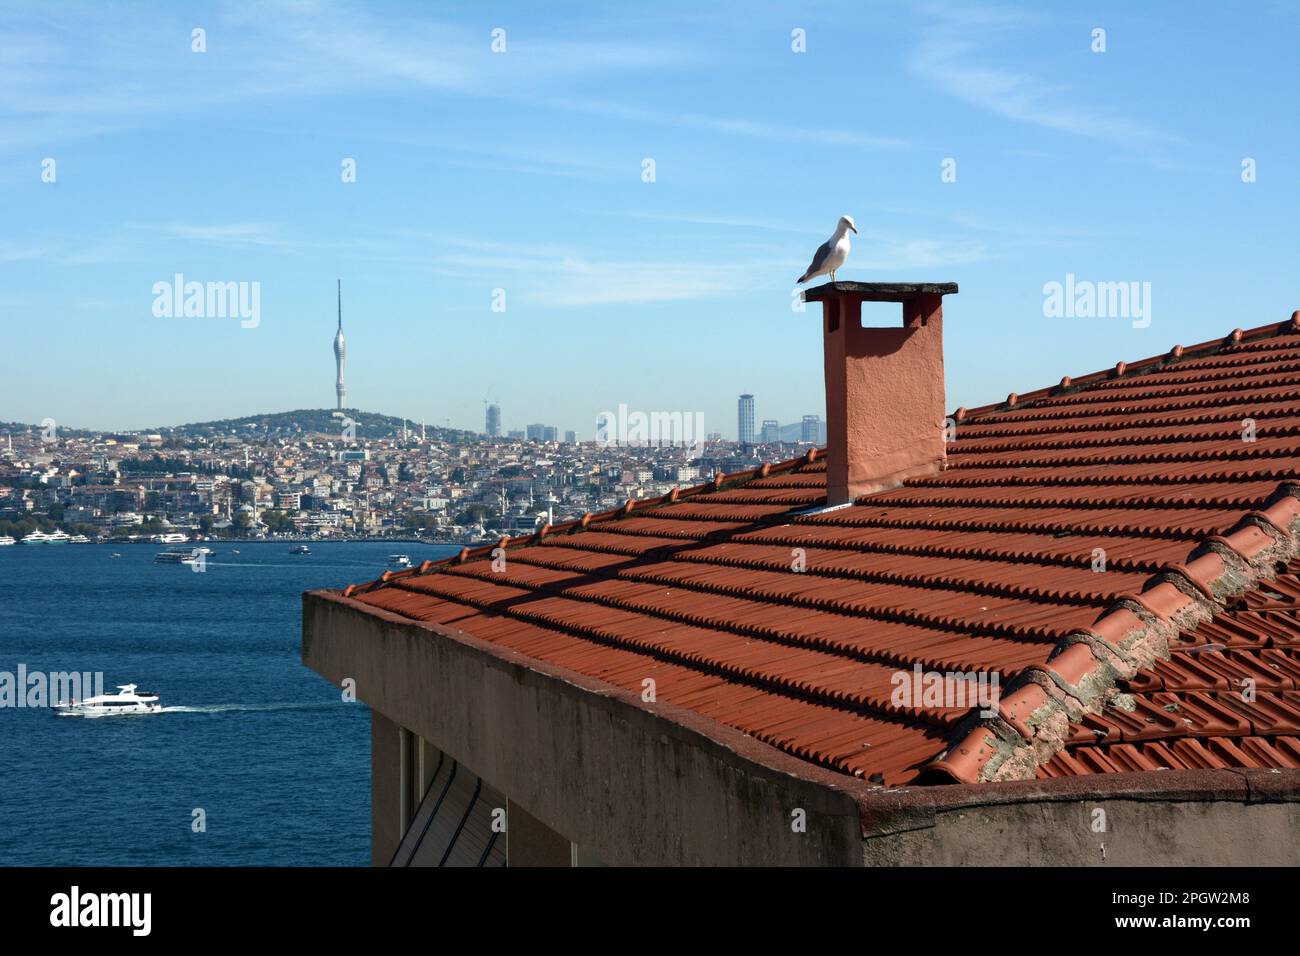 Guardando attraverso lo stretto del Bosforo da Cihangir, Beyoglu sul lato europeo a Uskudar sul lato asiatico di Istanbul, Turkiye / Turchia. Foto Stock